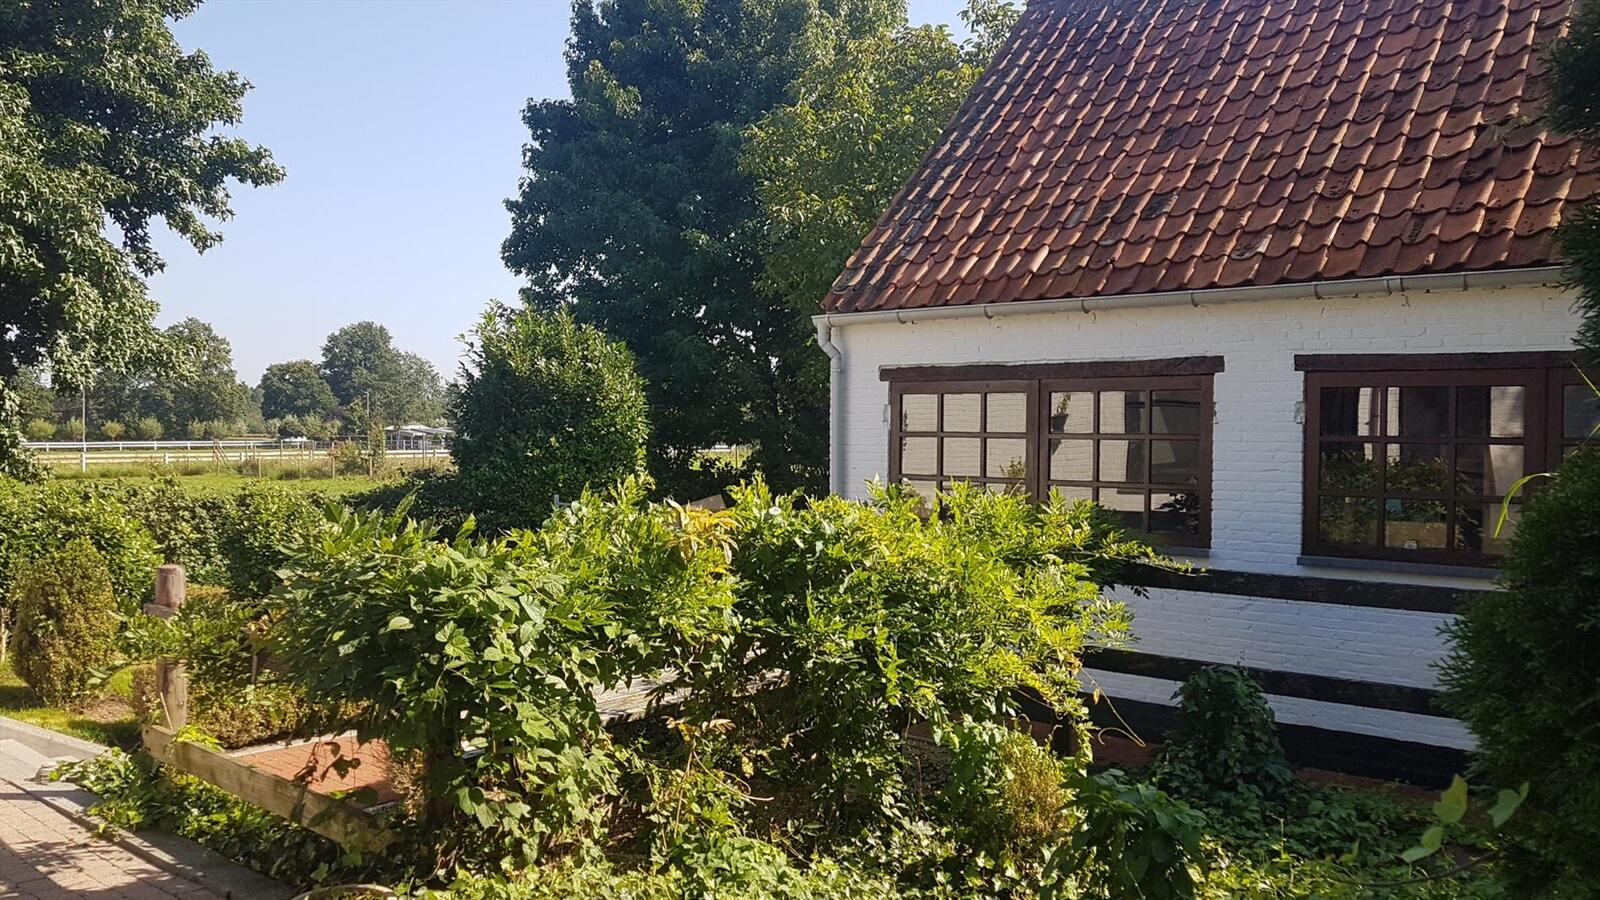 Property sold in Heppen